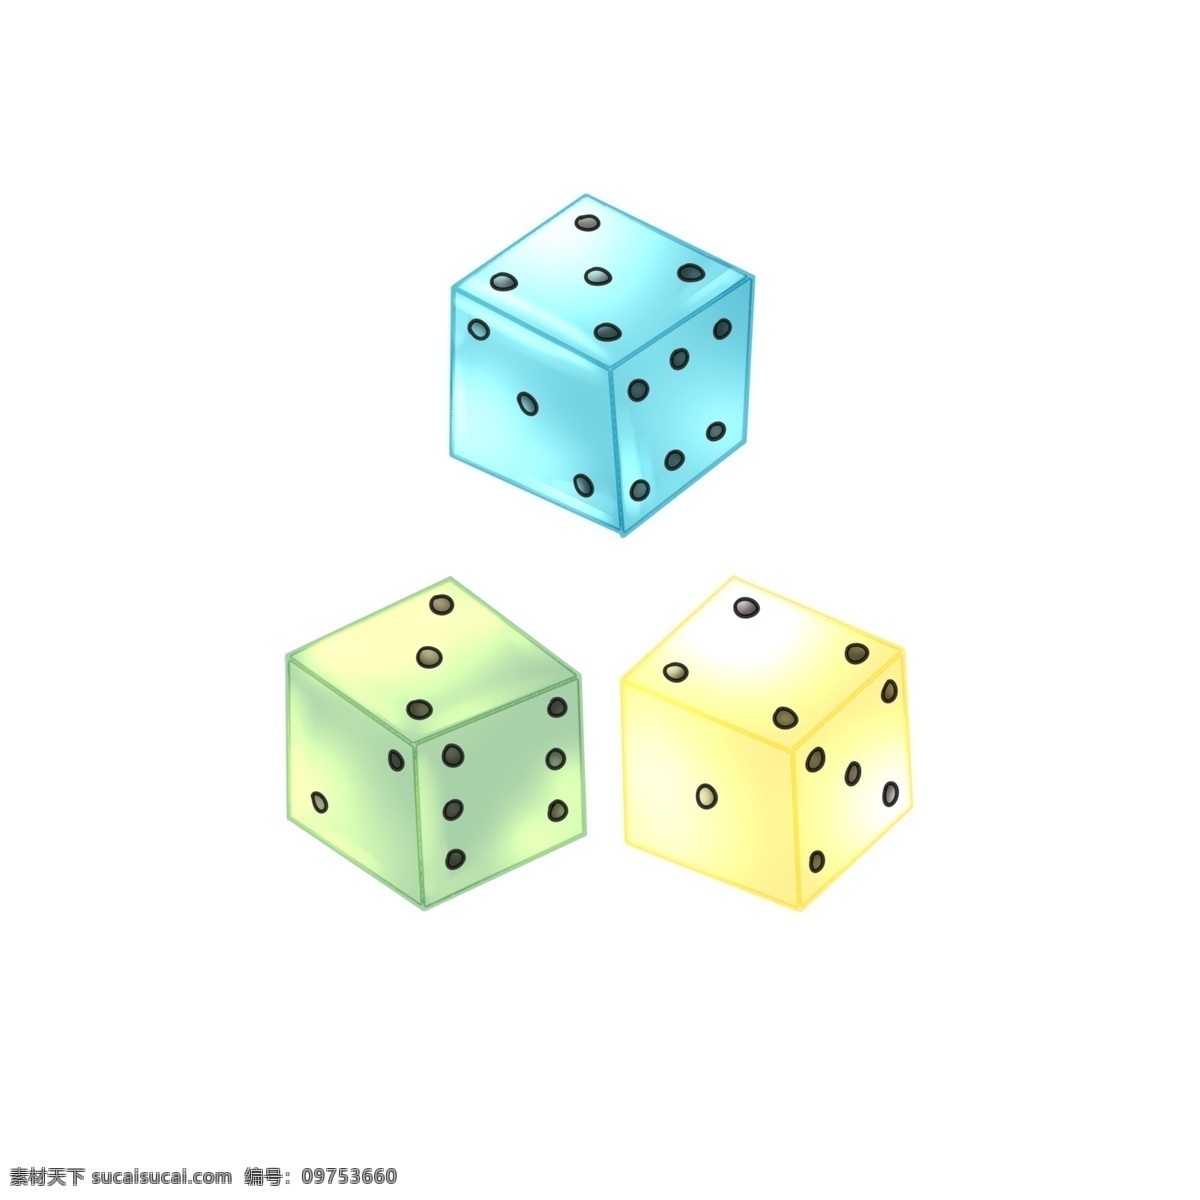 精美 三 色 骰子 插画 三色骰子 卡通骰子插画 黄色 蓝色 绿色 精美的骰子 色子 色子插画